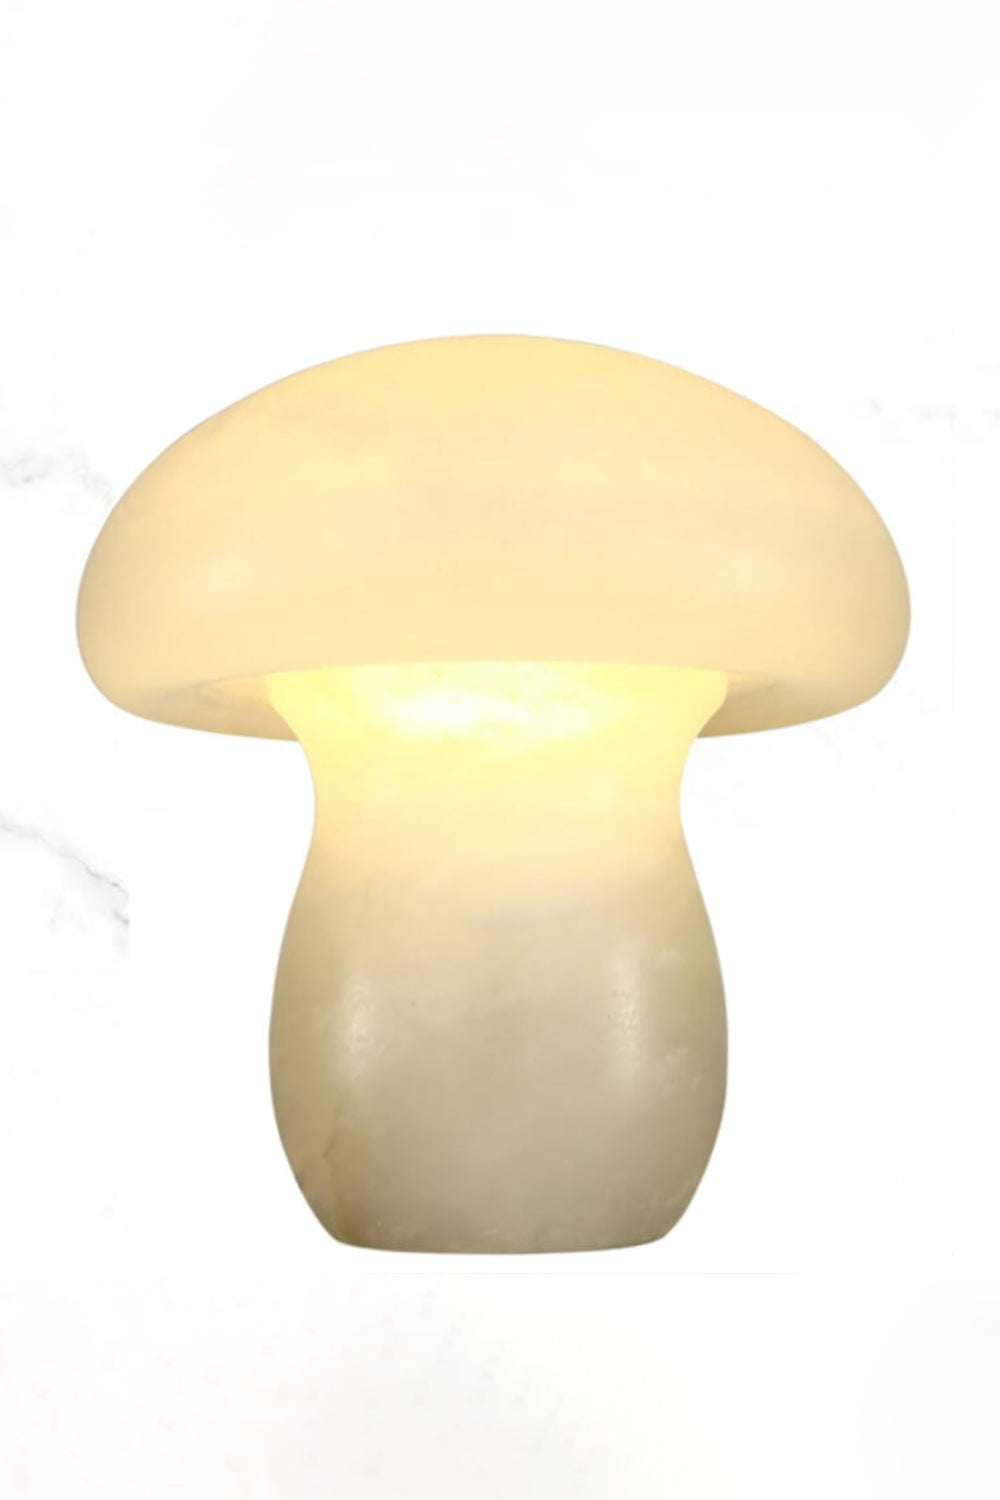 Mushroom Table Lamp - SamuLighting